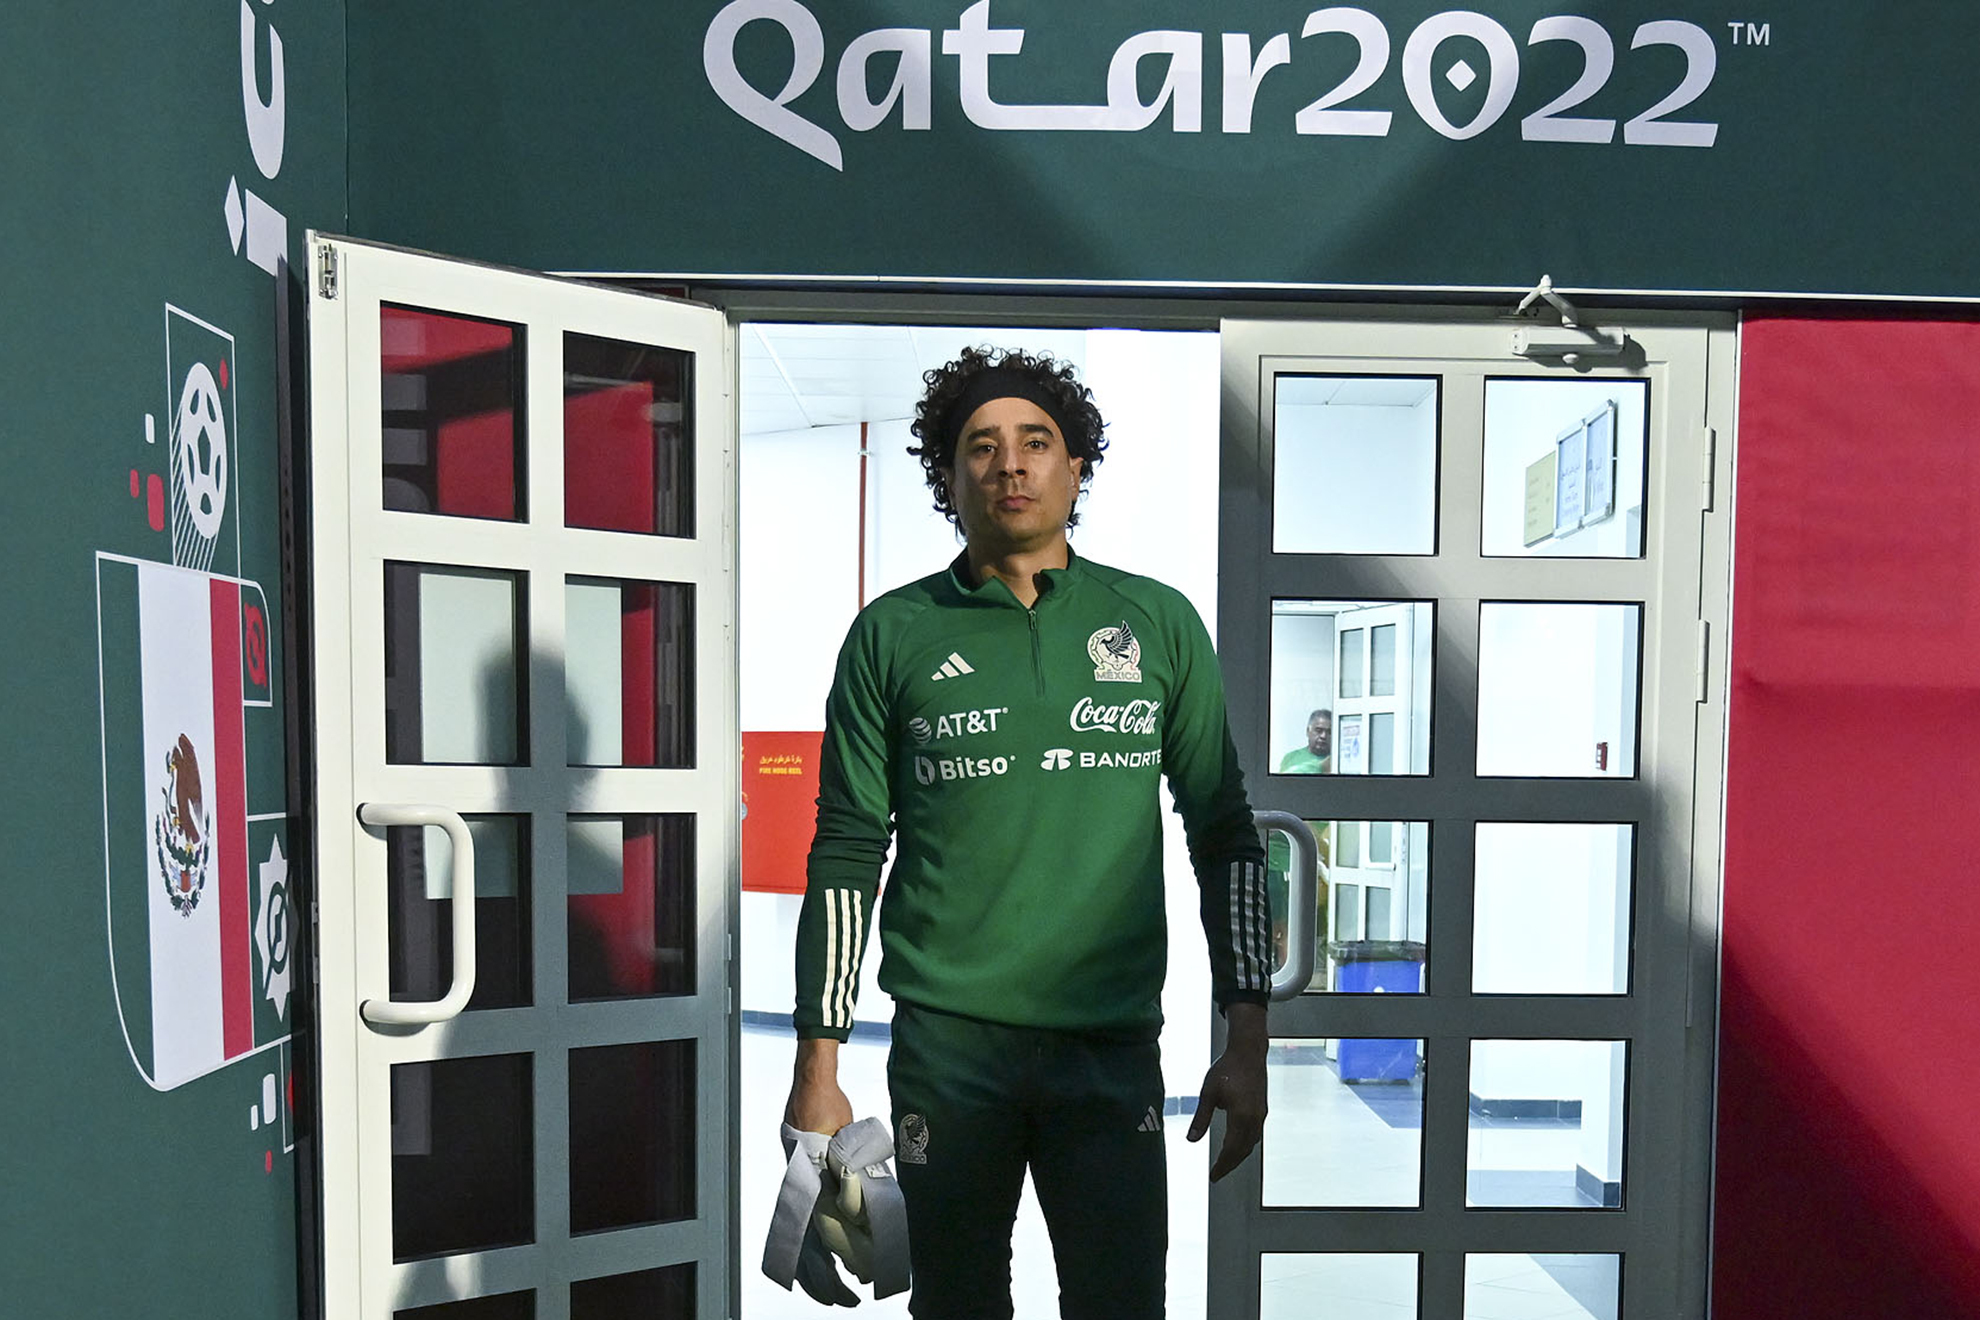 Jugadores de la selección mexicana reciben emotivas cartas previo a Qatar 2022